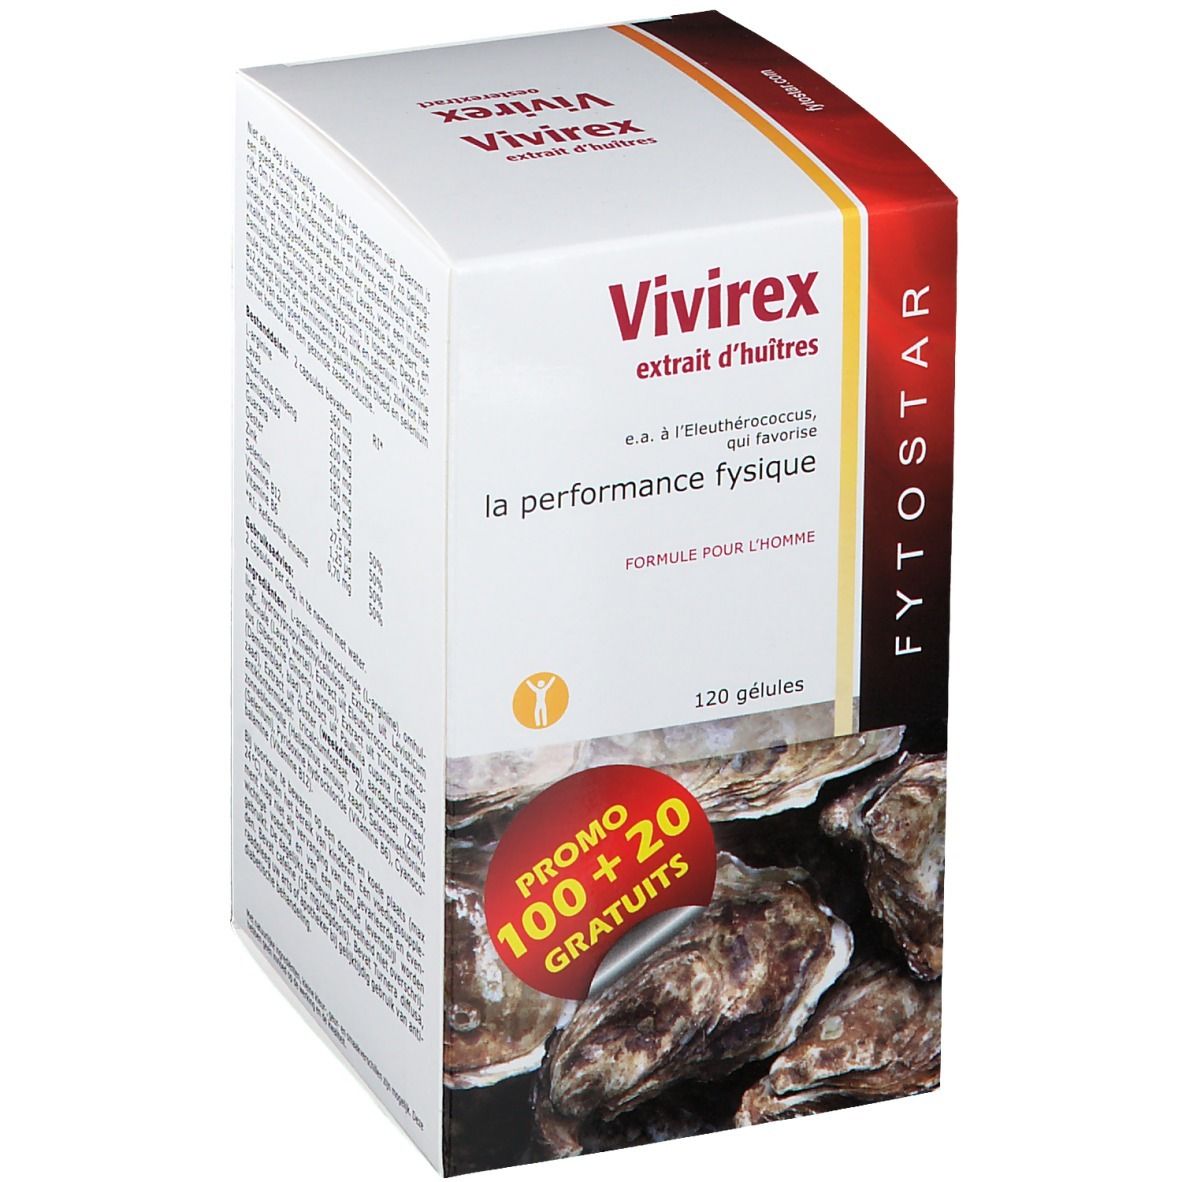 Fytostar Vivirex extrait d'huîtres